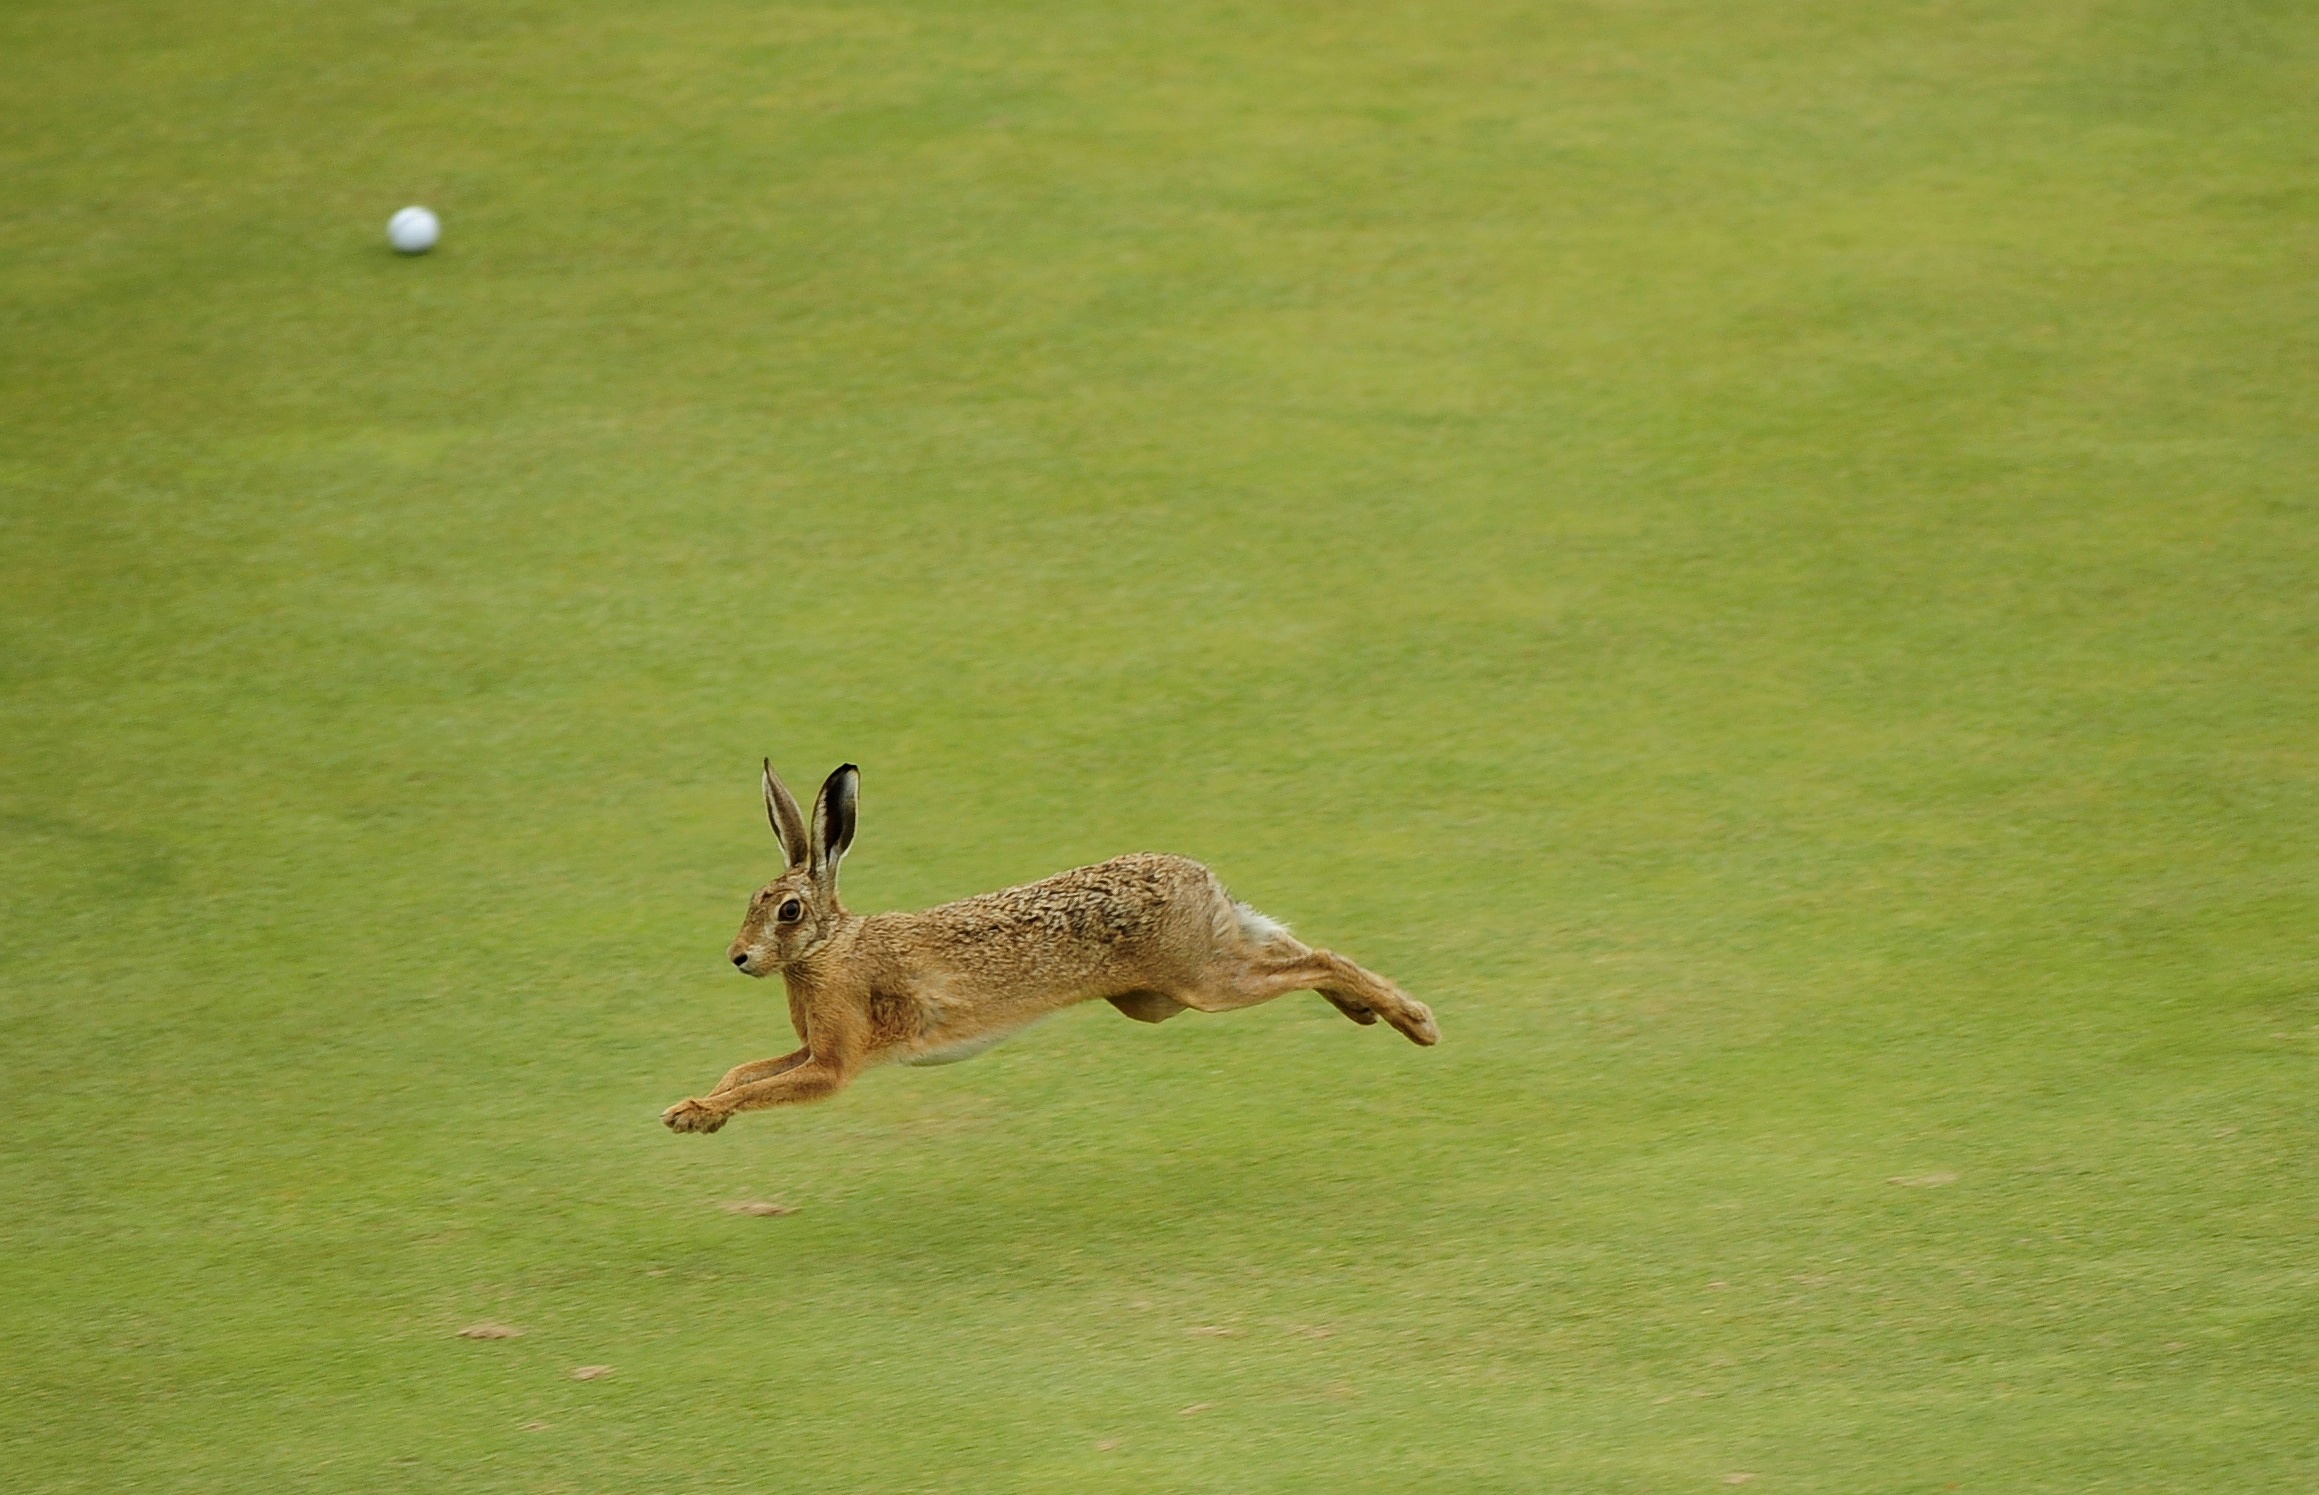 Зайчик убегает. Заяц Русак бежит. Заяц Русак прыгает. Заяц в прыжке. Кролик бежит.